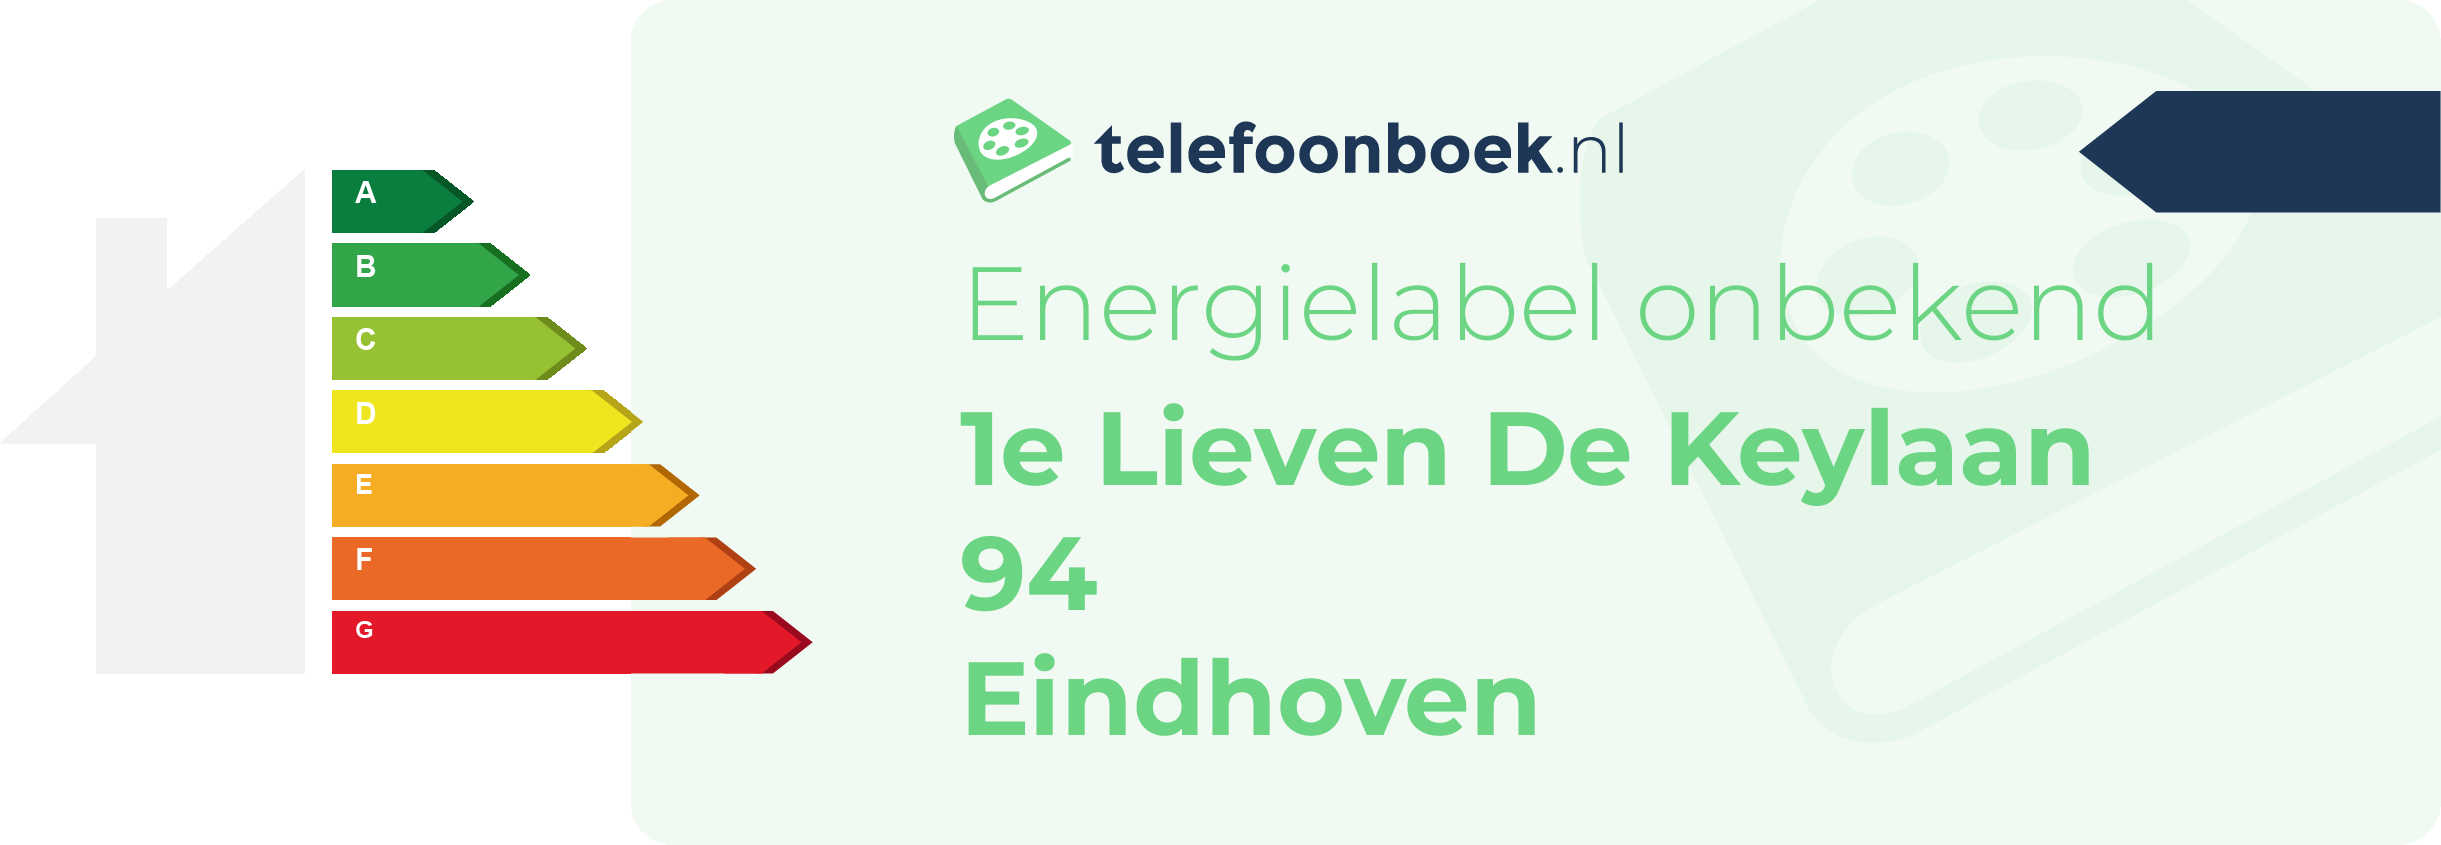 Energielabel 1e Lieven De Keylaan 94 Eindhoven